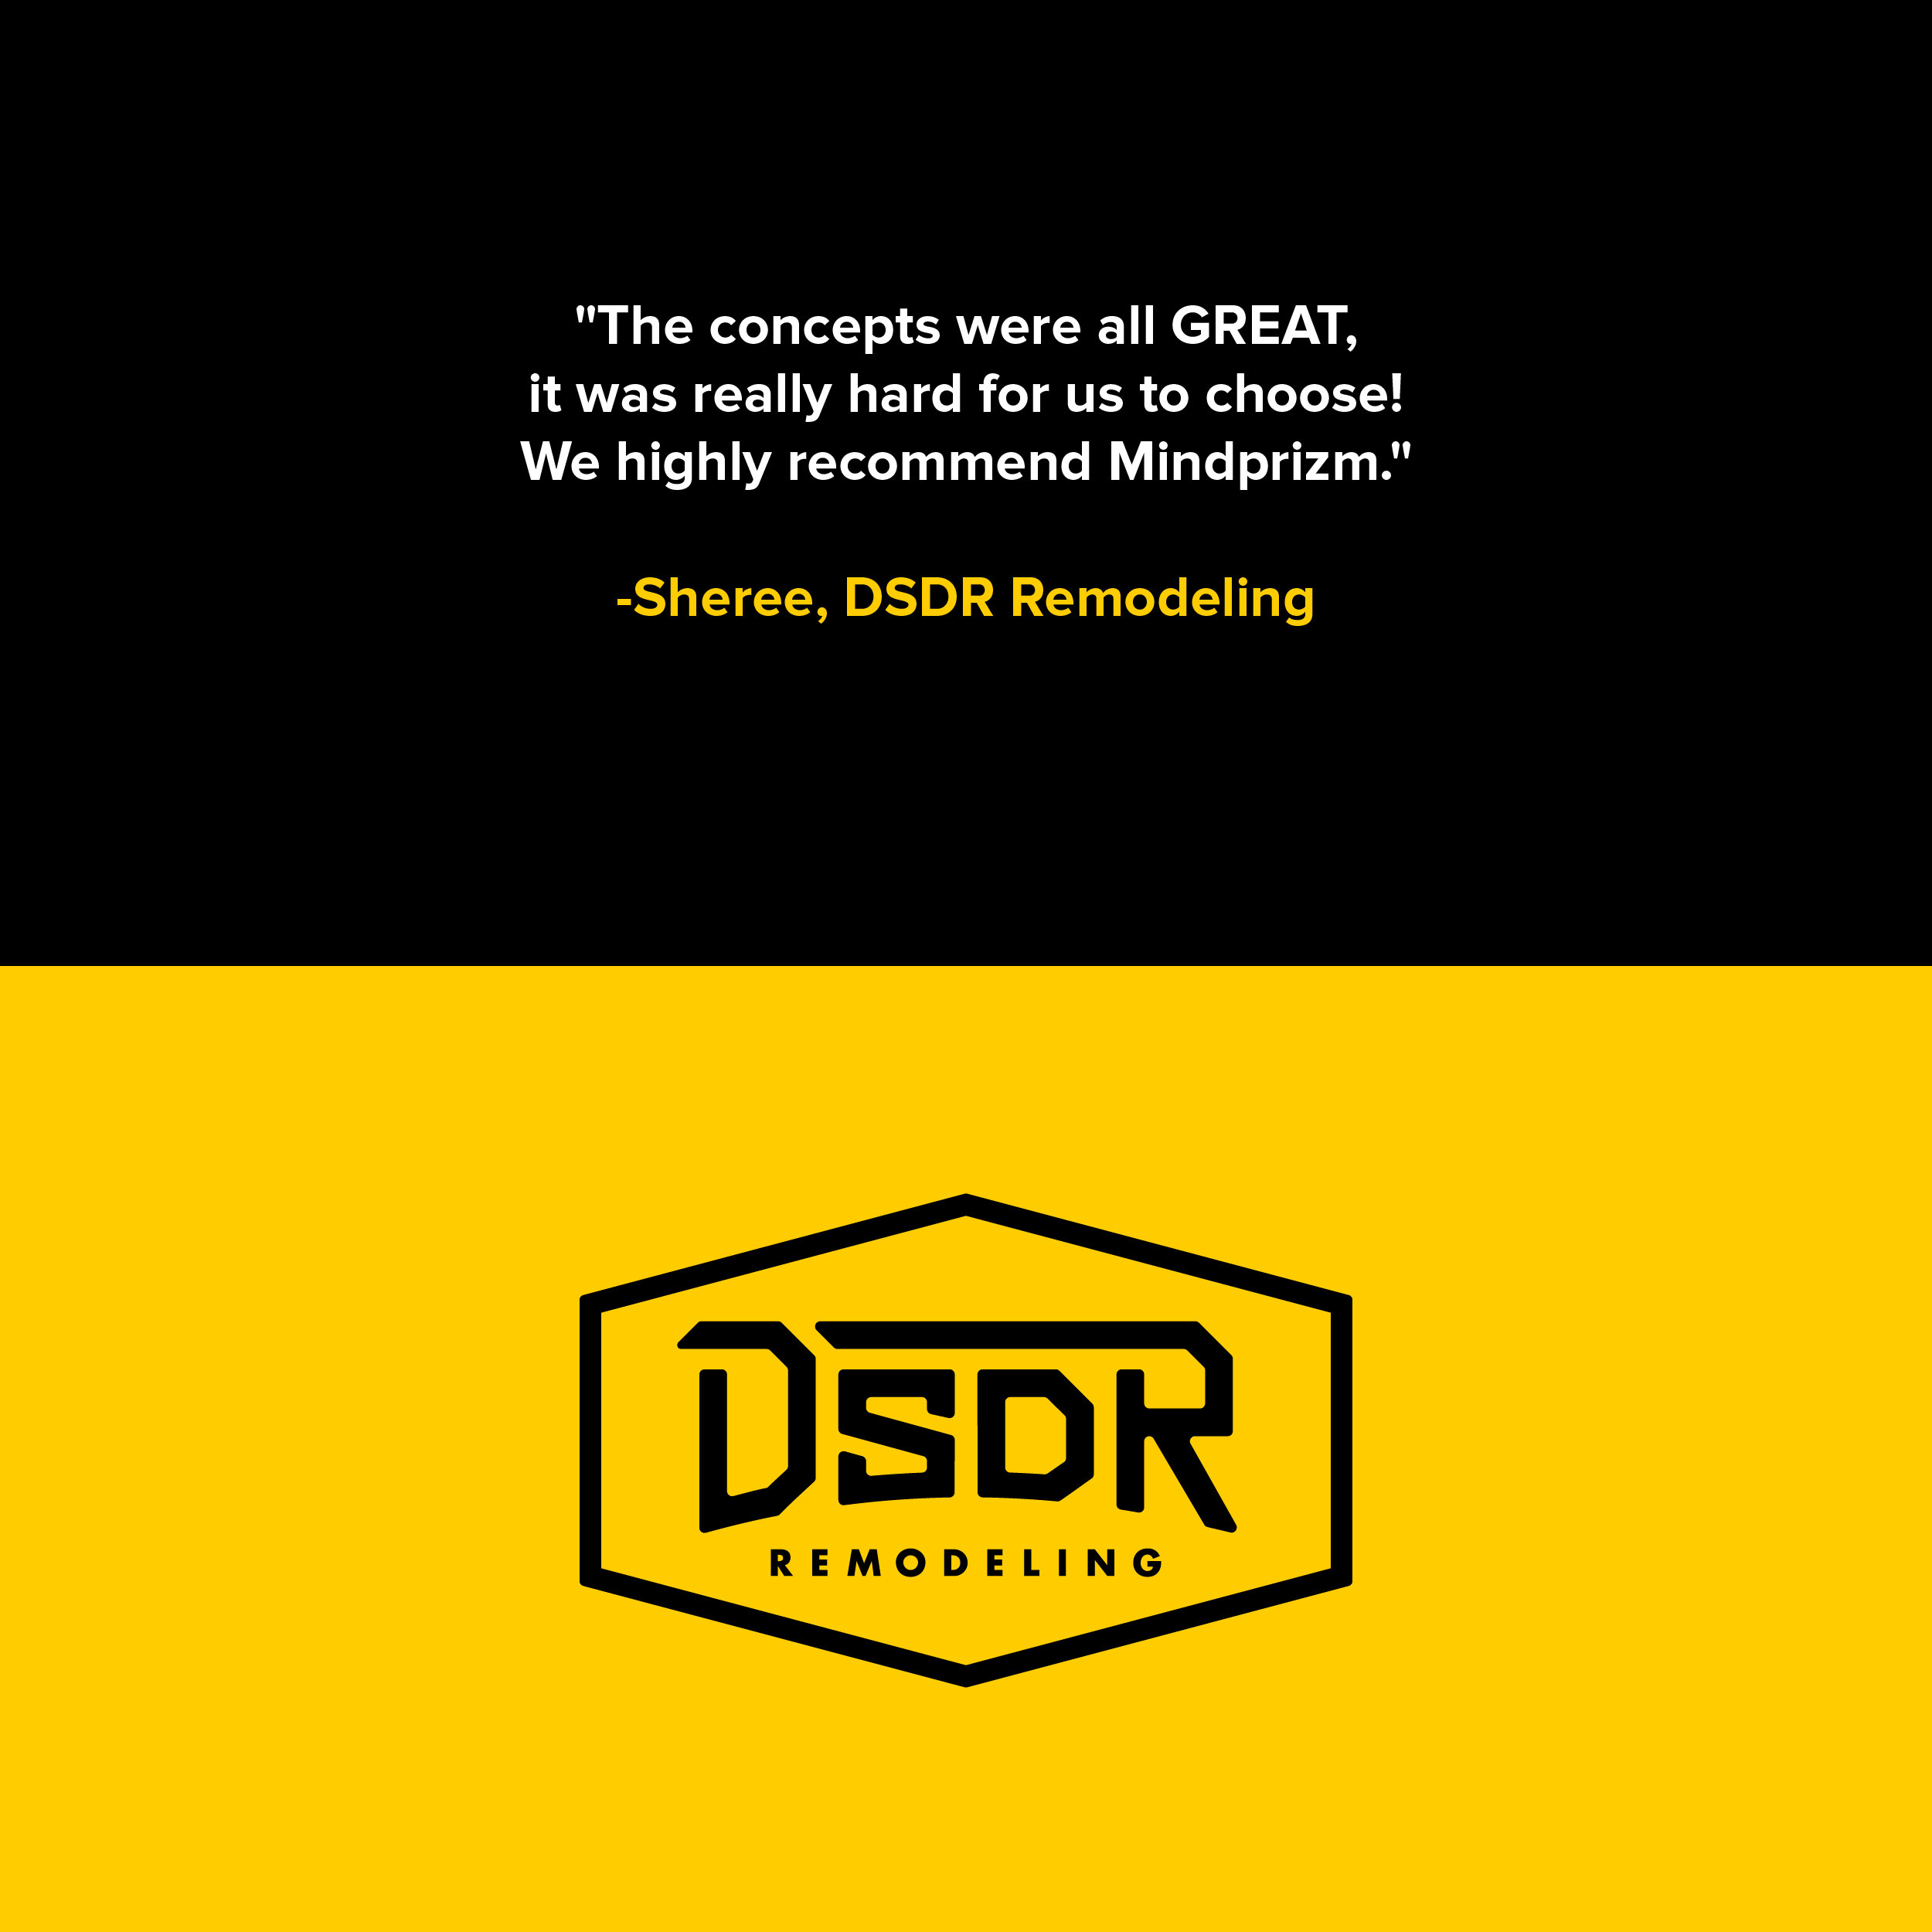 DSDR-Remodeling-Branding_Quote.jpg